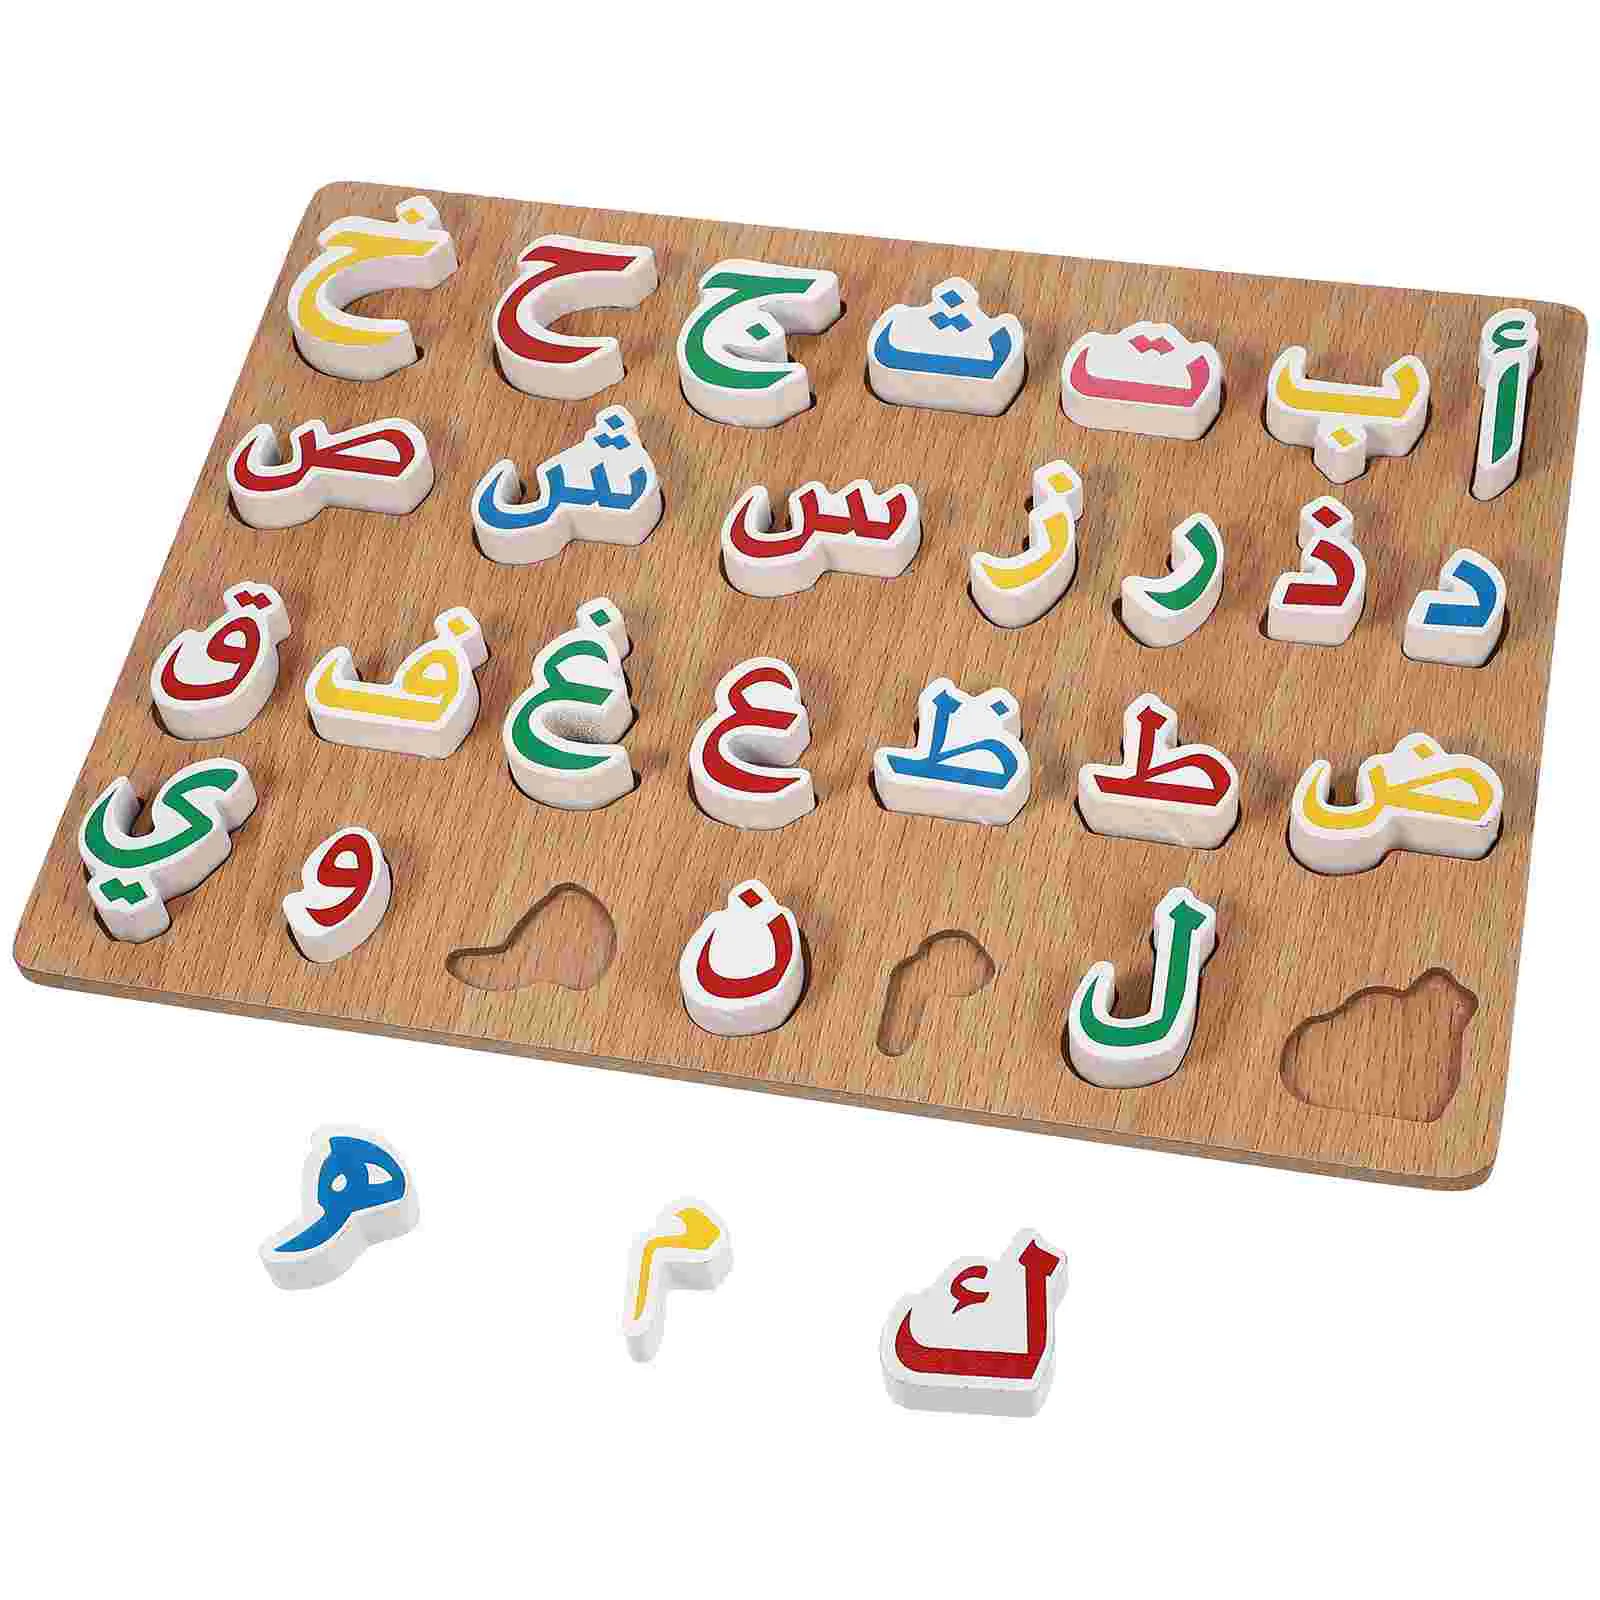 

Детская головоломка с цифрами, подходящая игрушка для малышей, арабский алфавит, игрушки, доска с буквами, головоломка для математики, развивающая